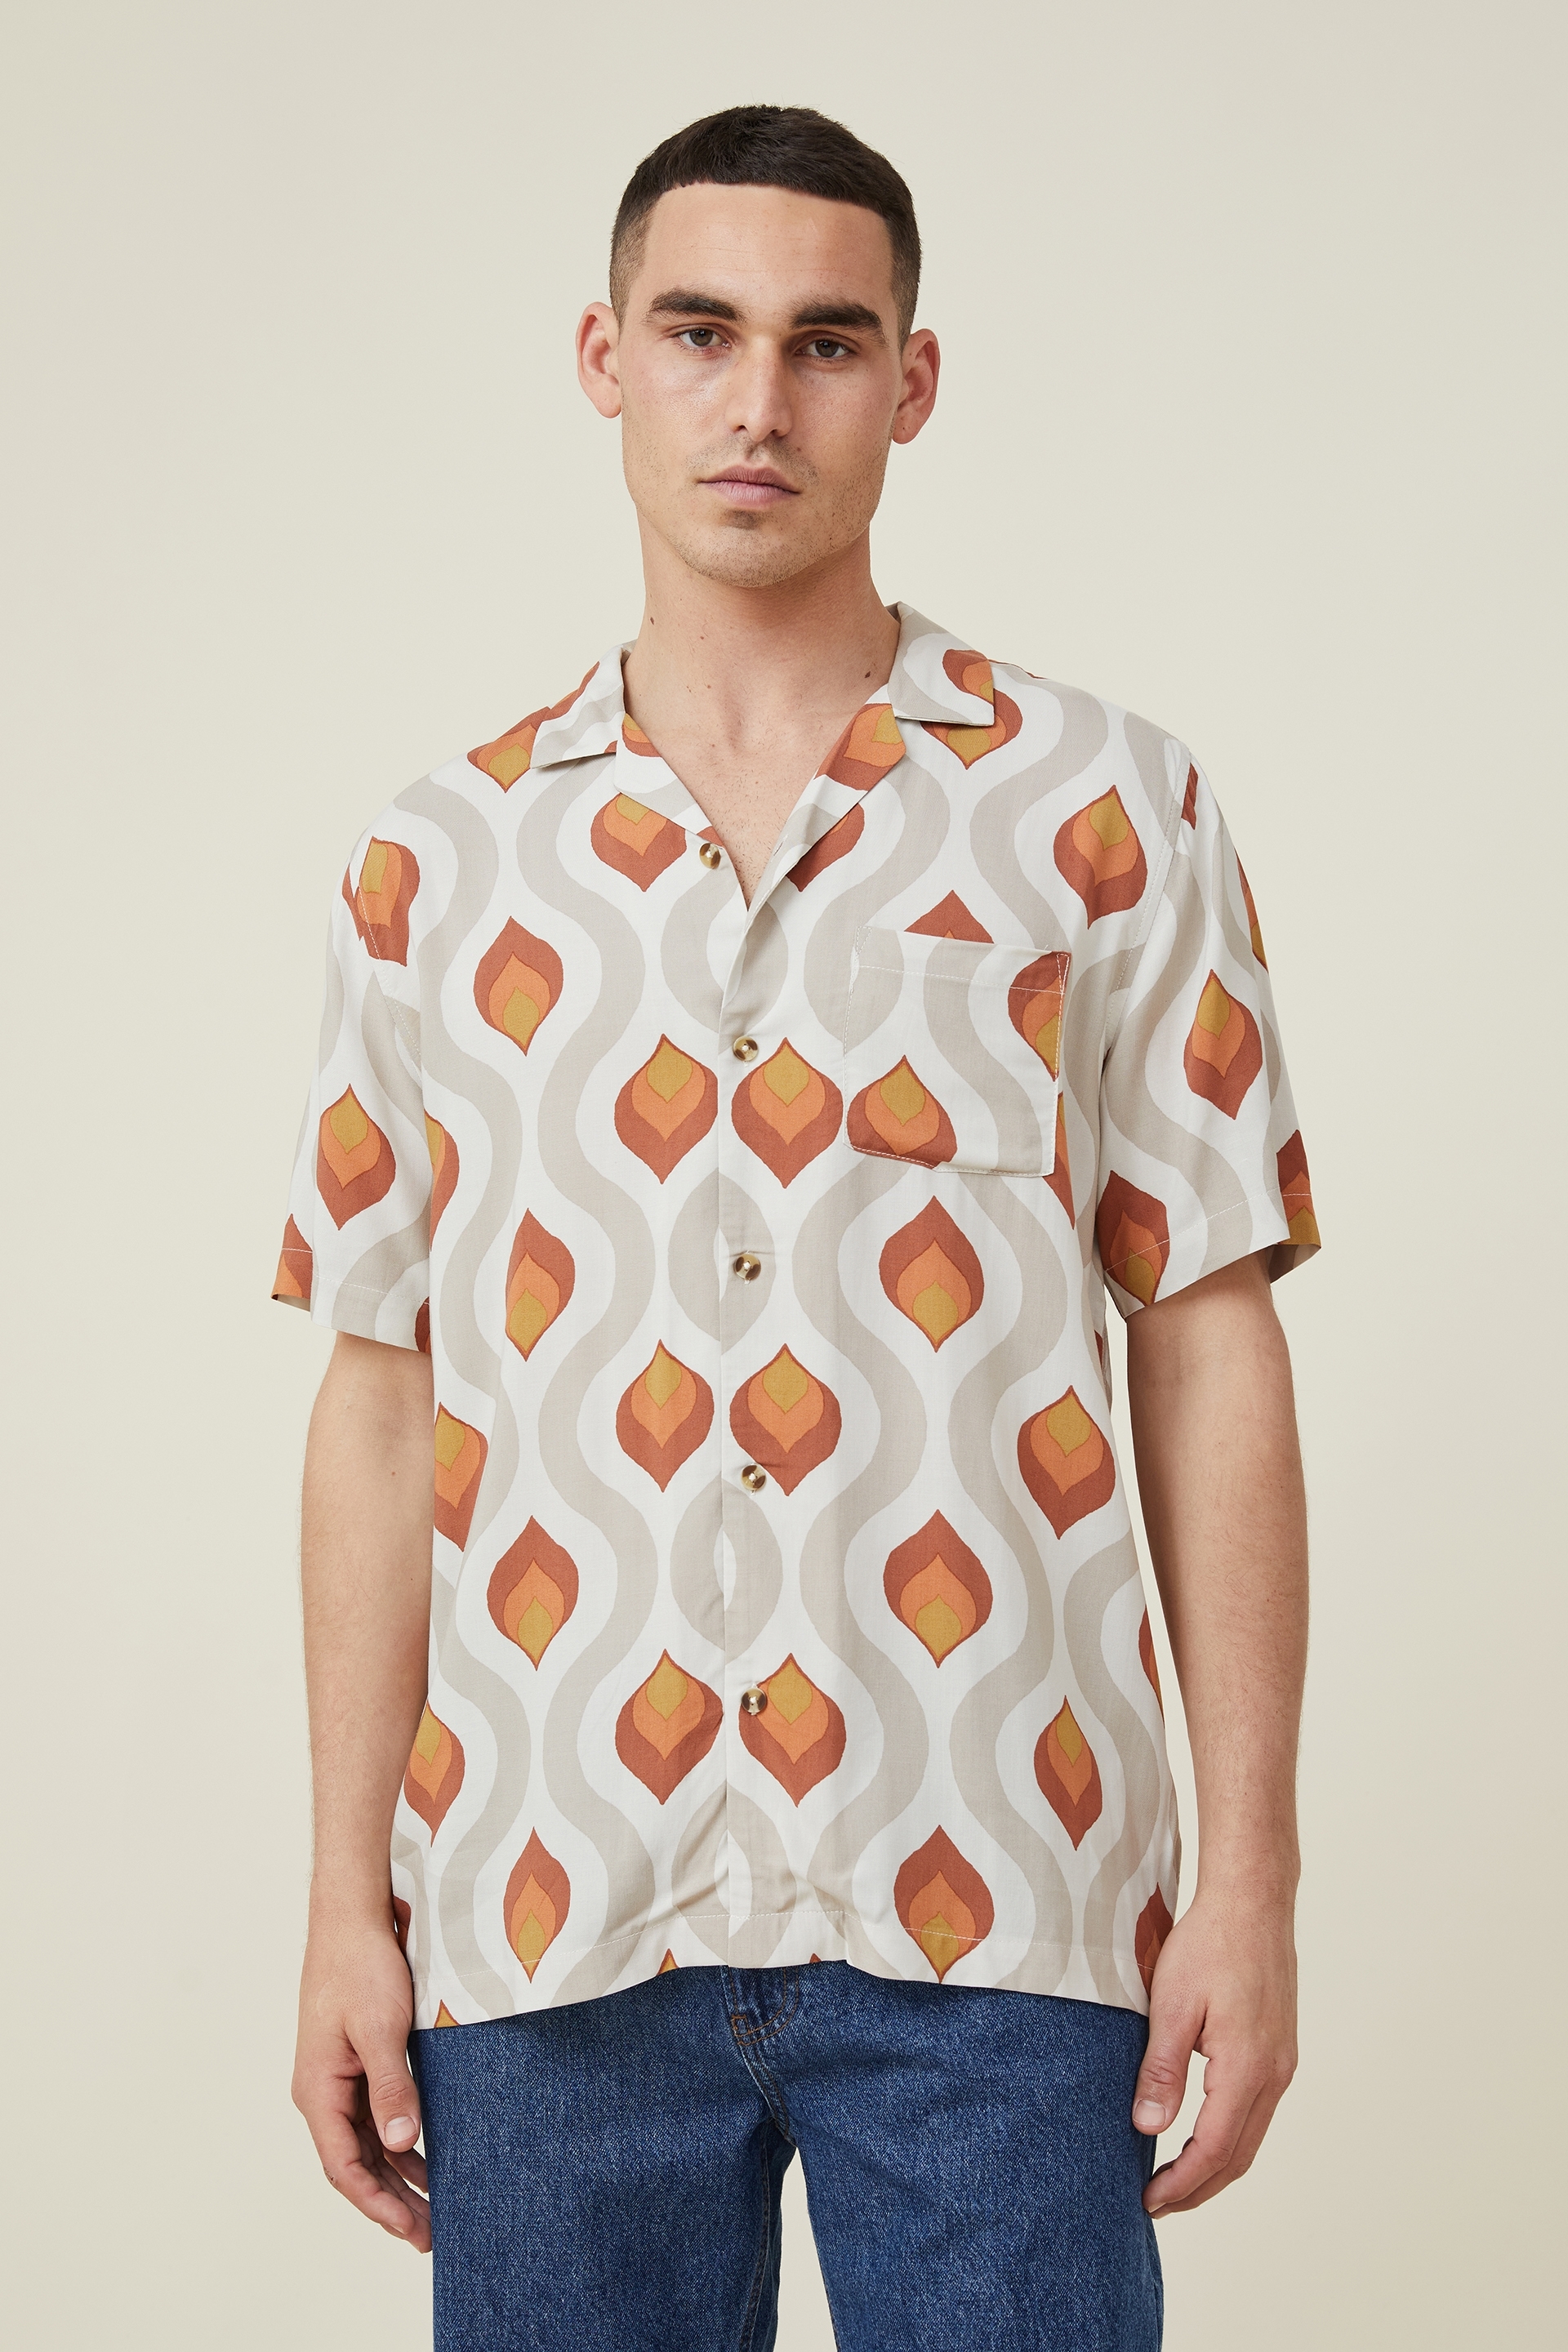 Cotton On Men - Riviera Short Sleeve Shirt - Ecru 70 s wallpaper